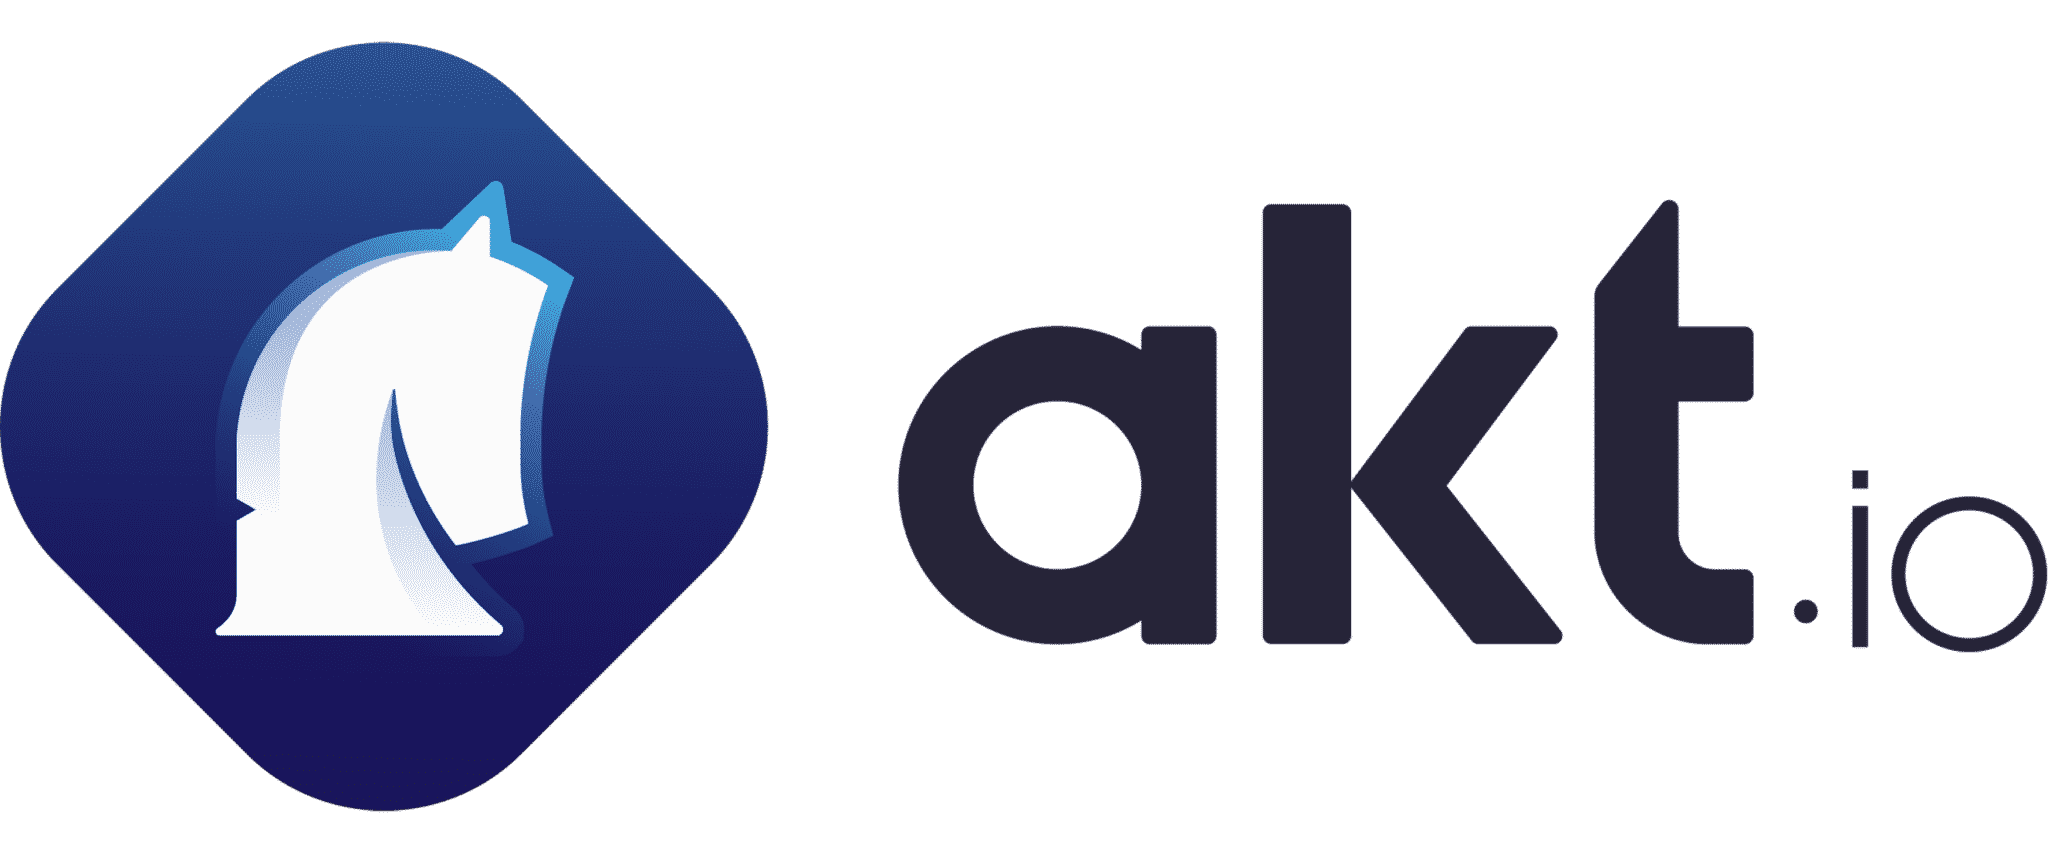 Akt.io raises 27 million euros to popularize crypto